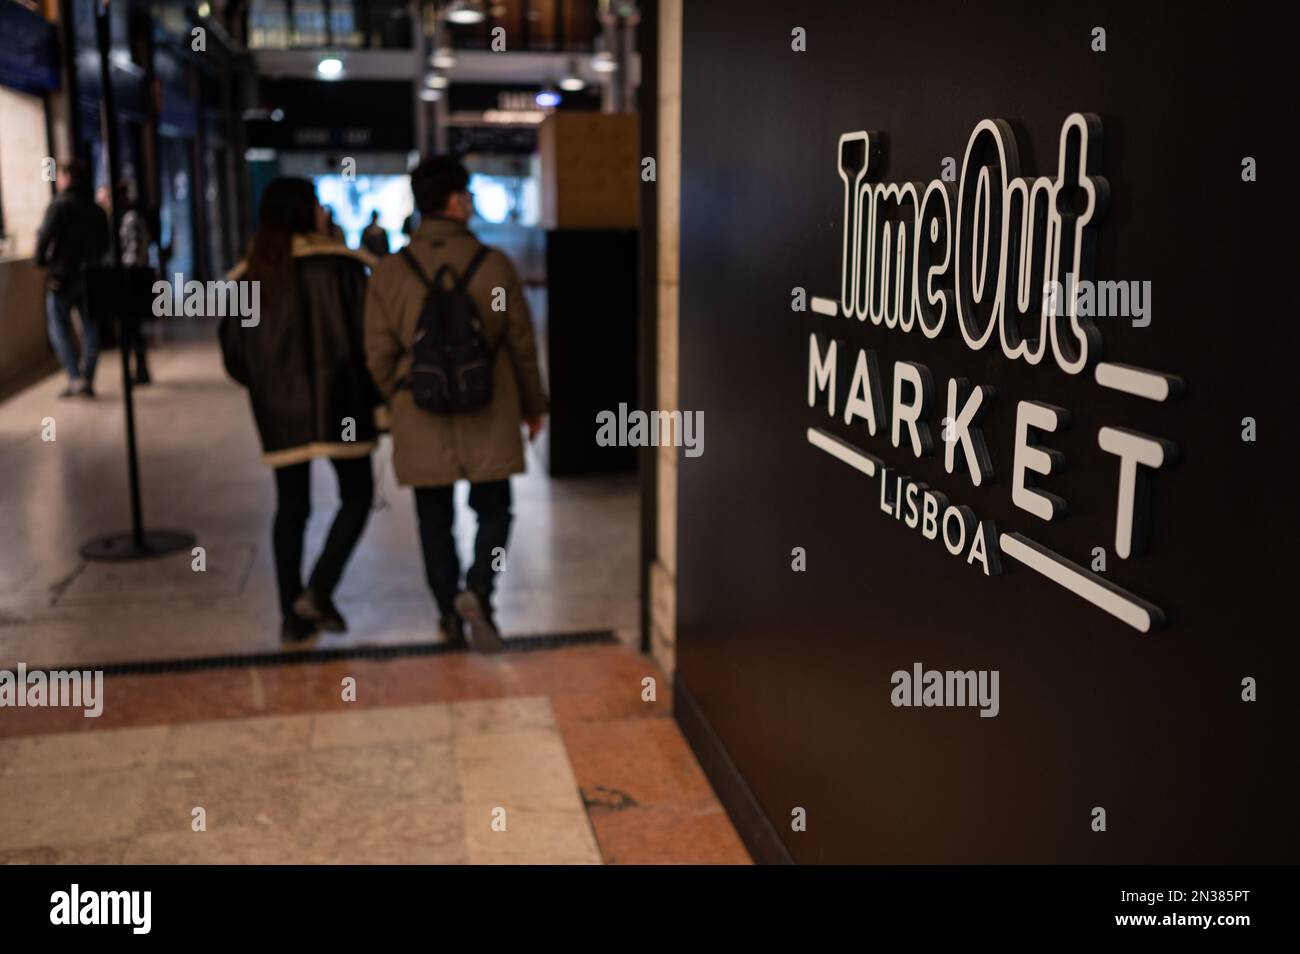 Time Out Market Lisboa, restaurante situado en el Mercado da Ribeira en Cais do Sodre en Lisboa, Portugal. Foto de stock